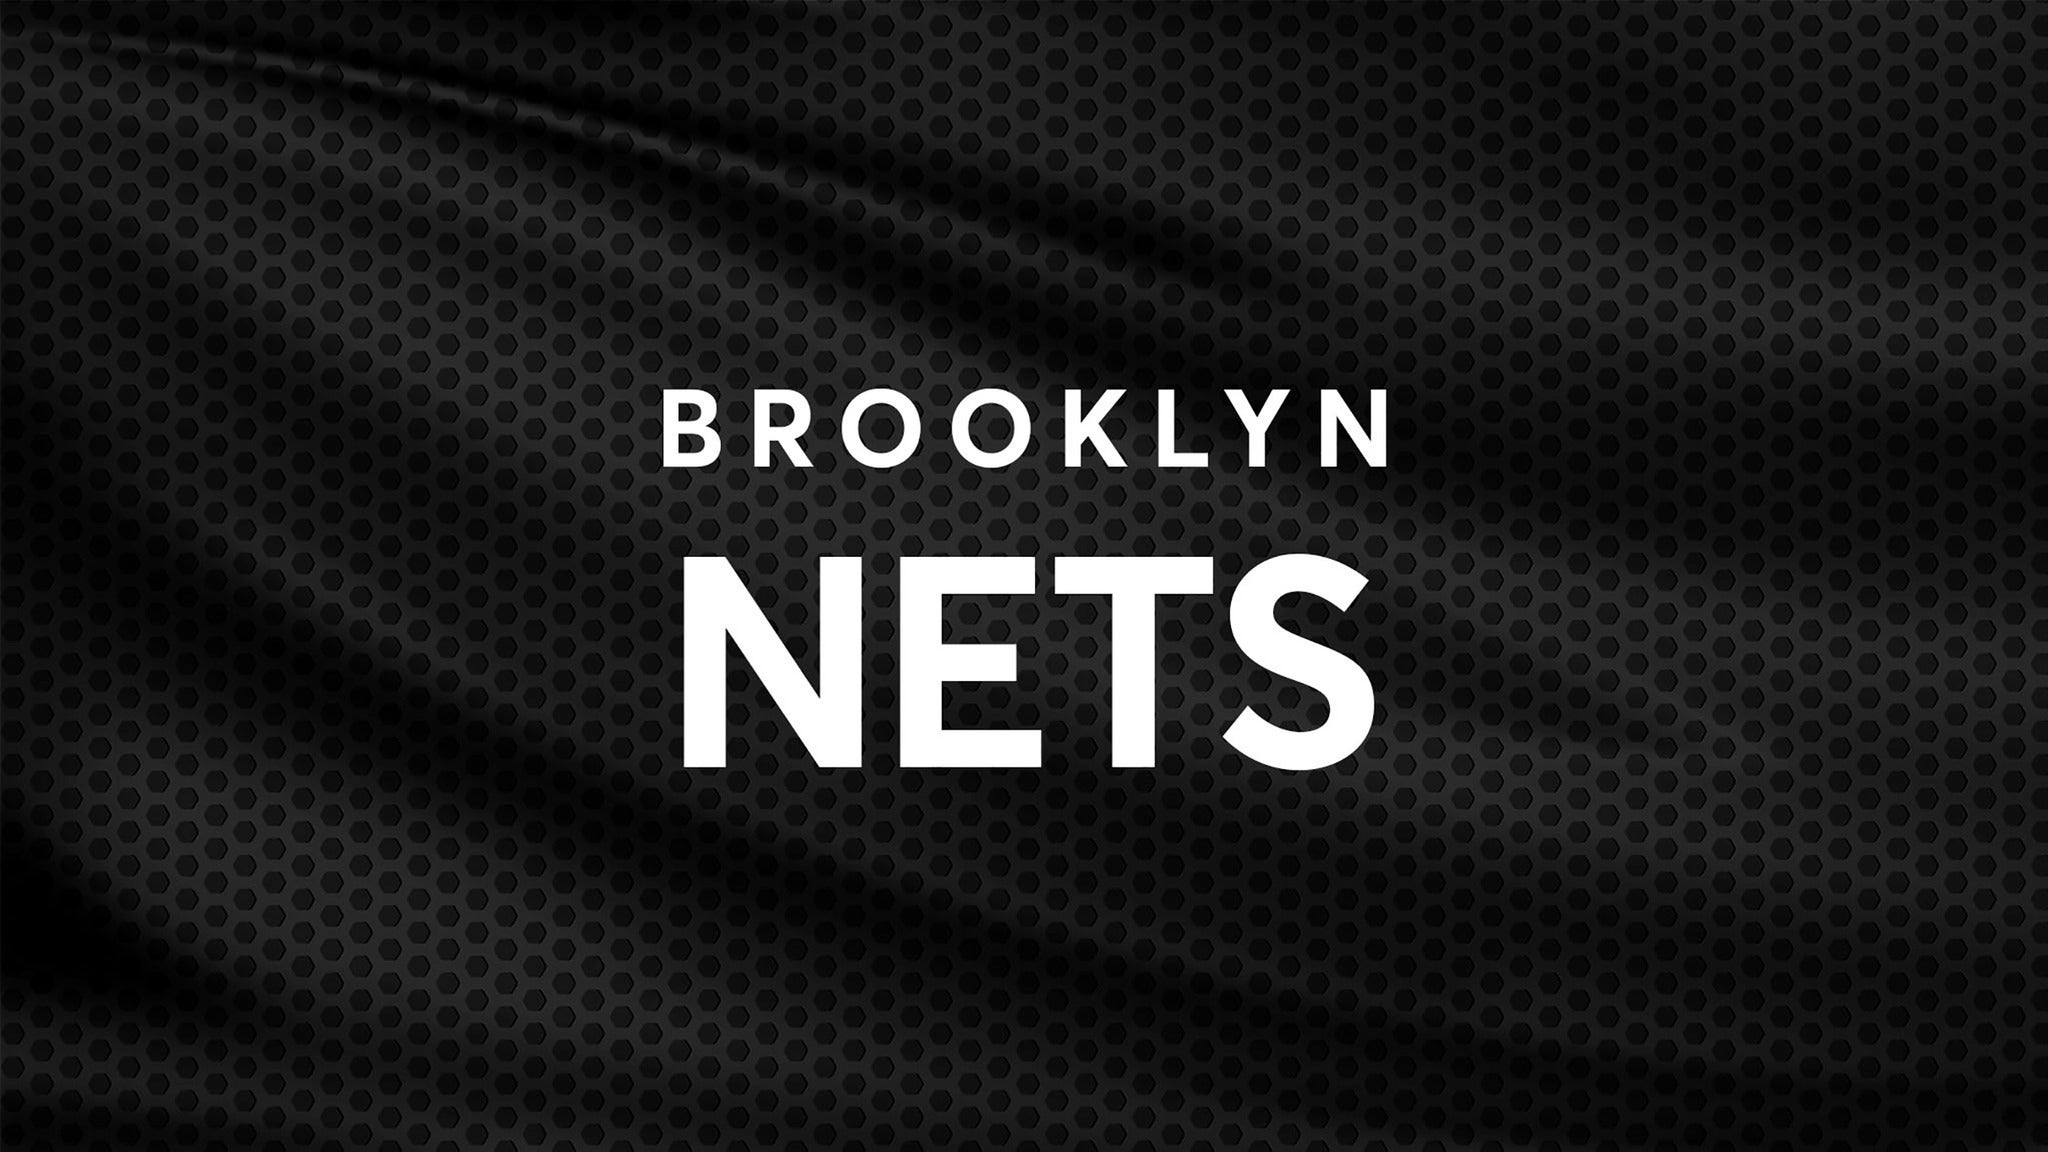 Brooklyn Nets vs. Detroit Pistons